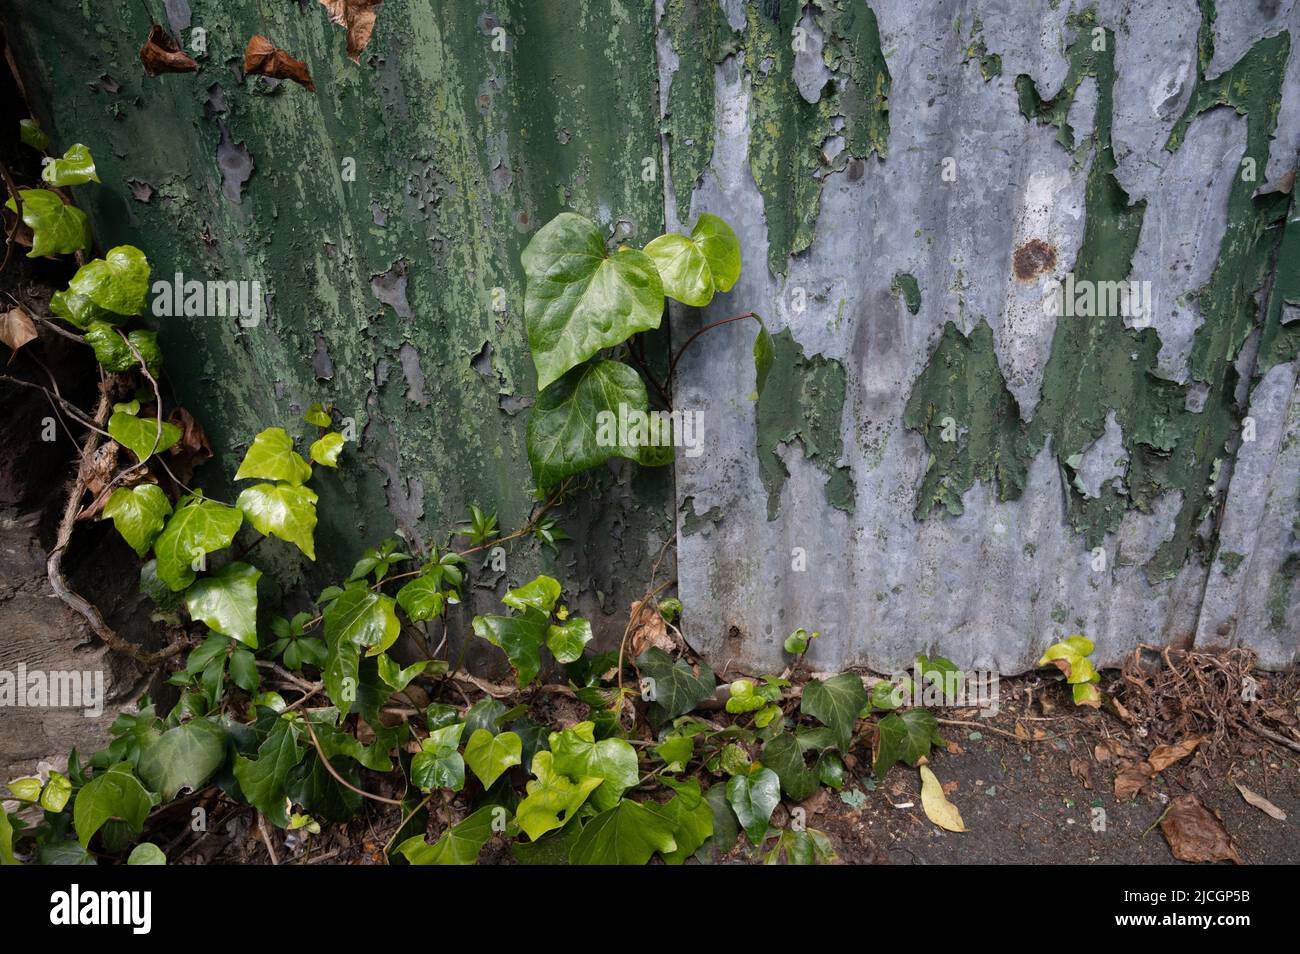 London, Hackney. Ivy und abblätternde grüne Farbe auf Wellblech. Stockfoto